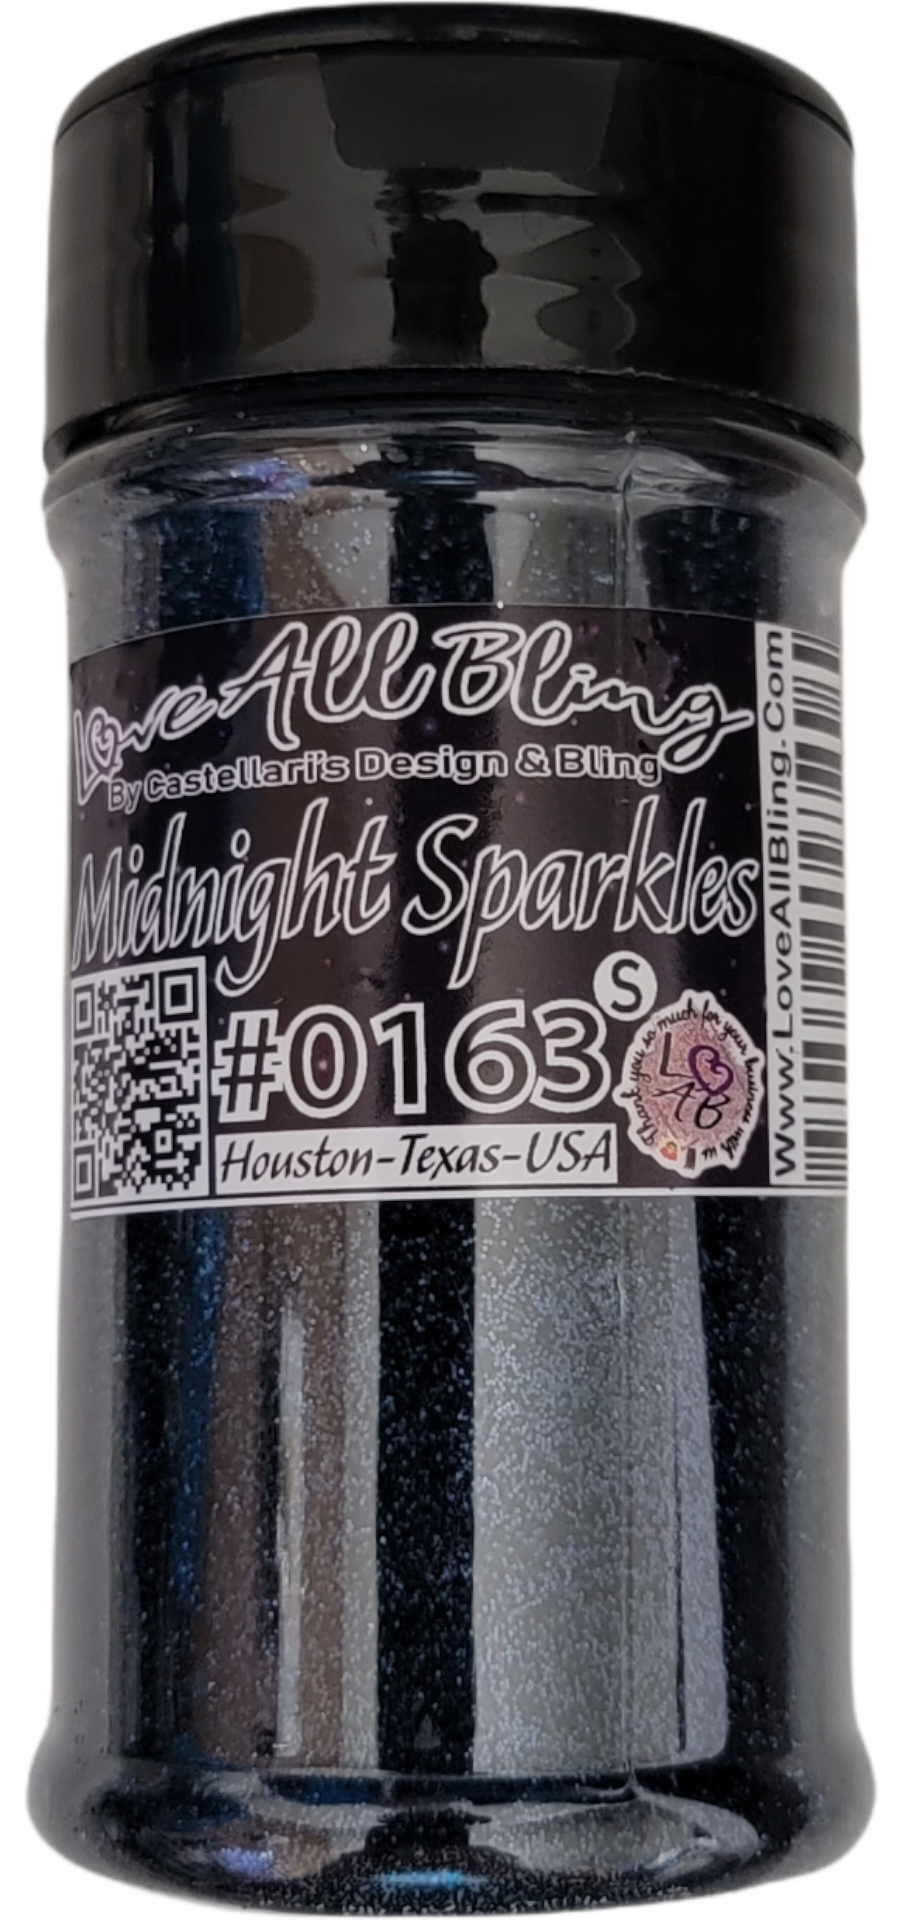 Midnight Sparkles